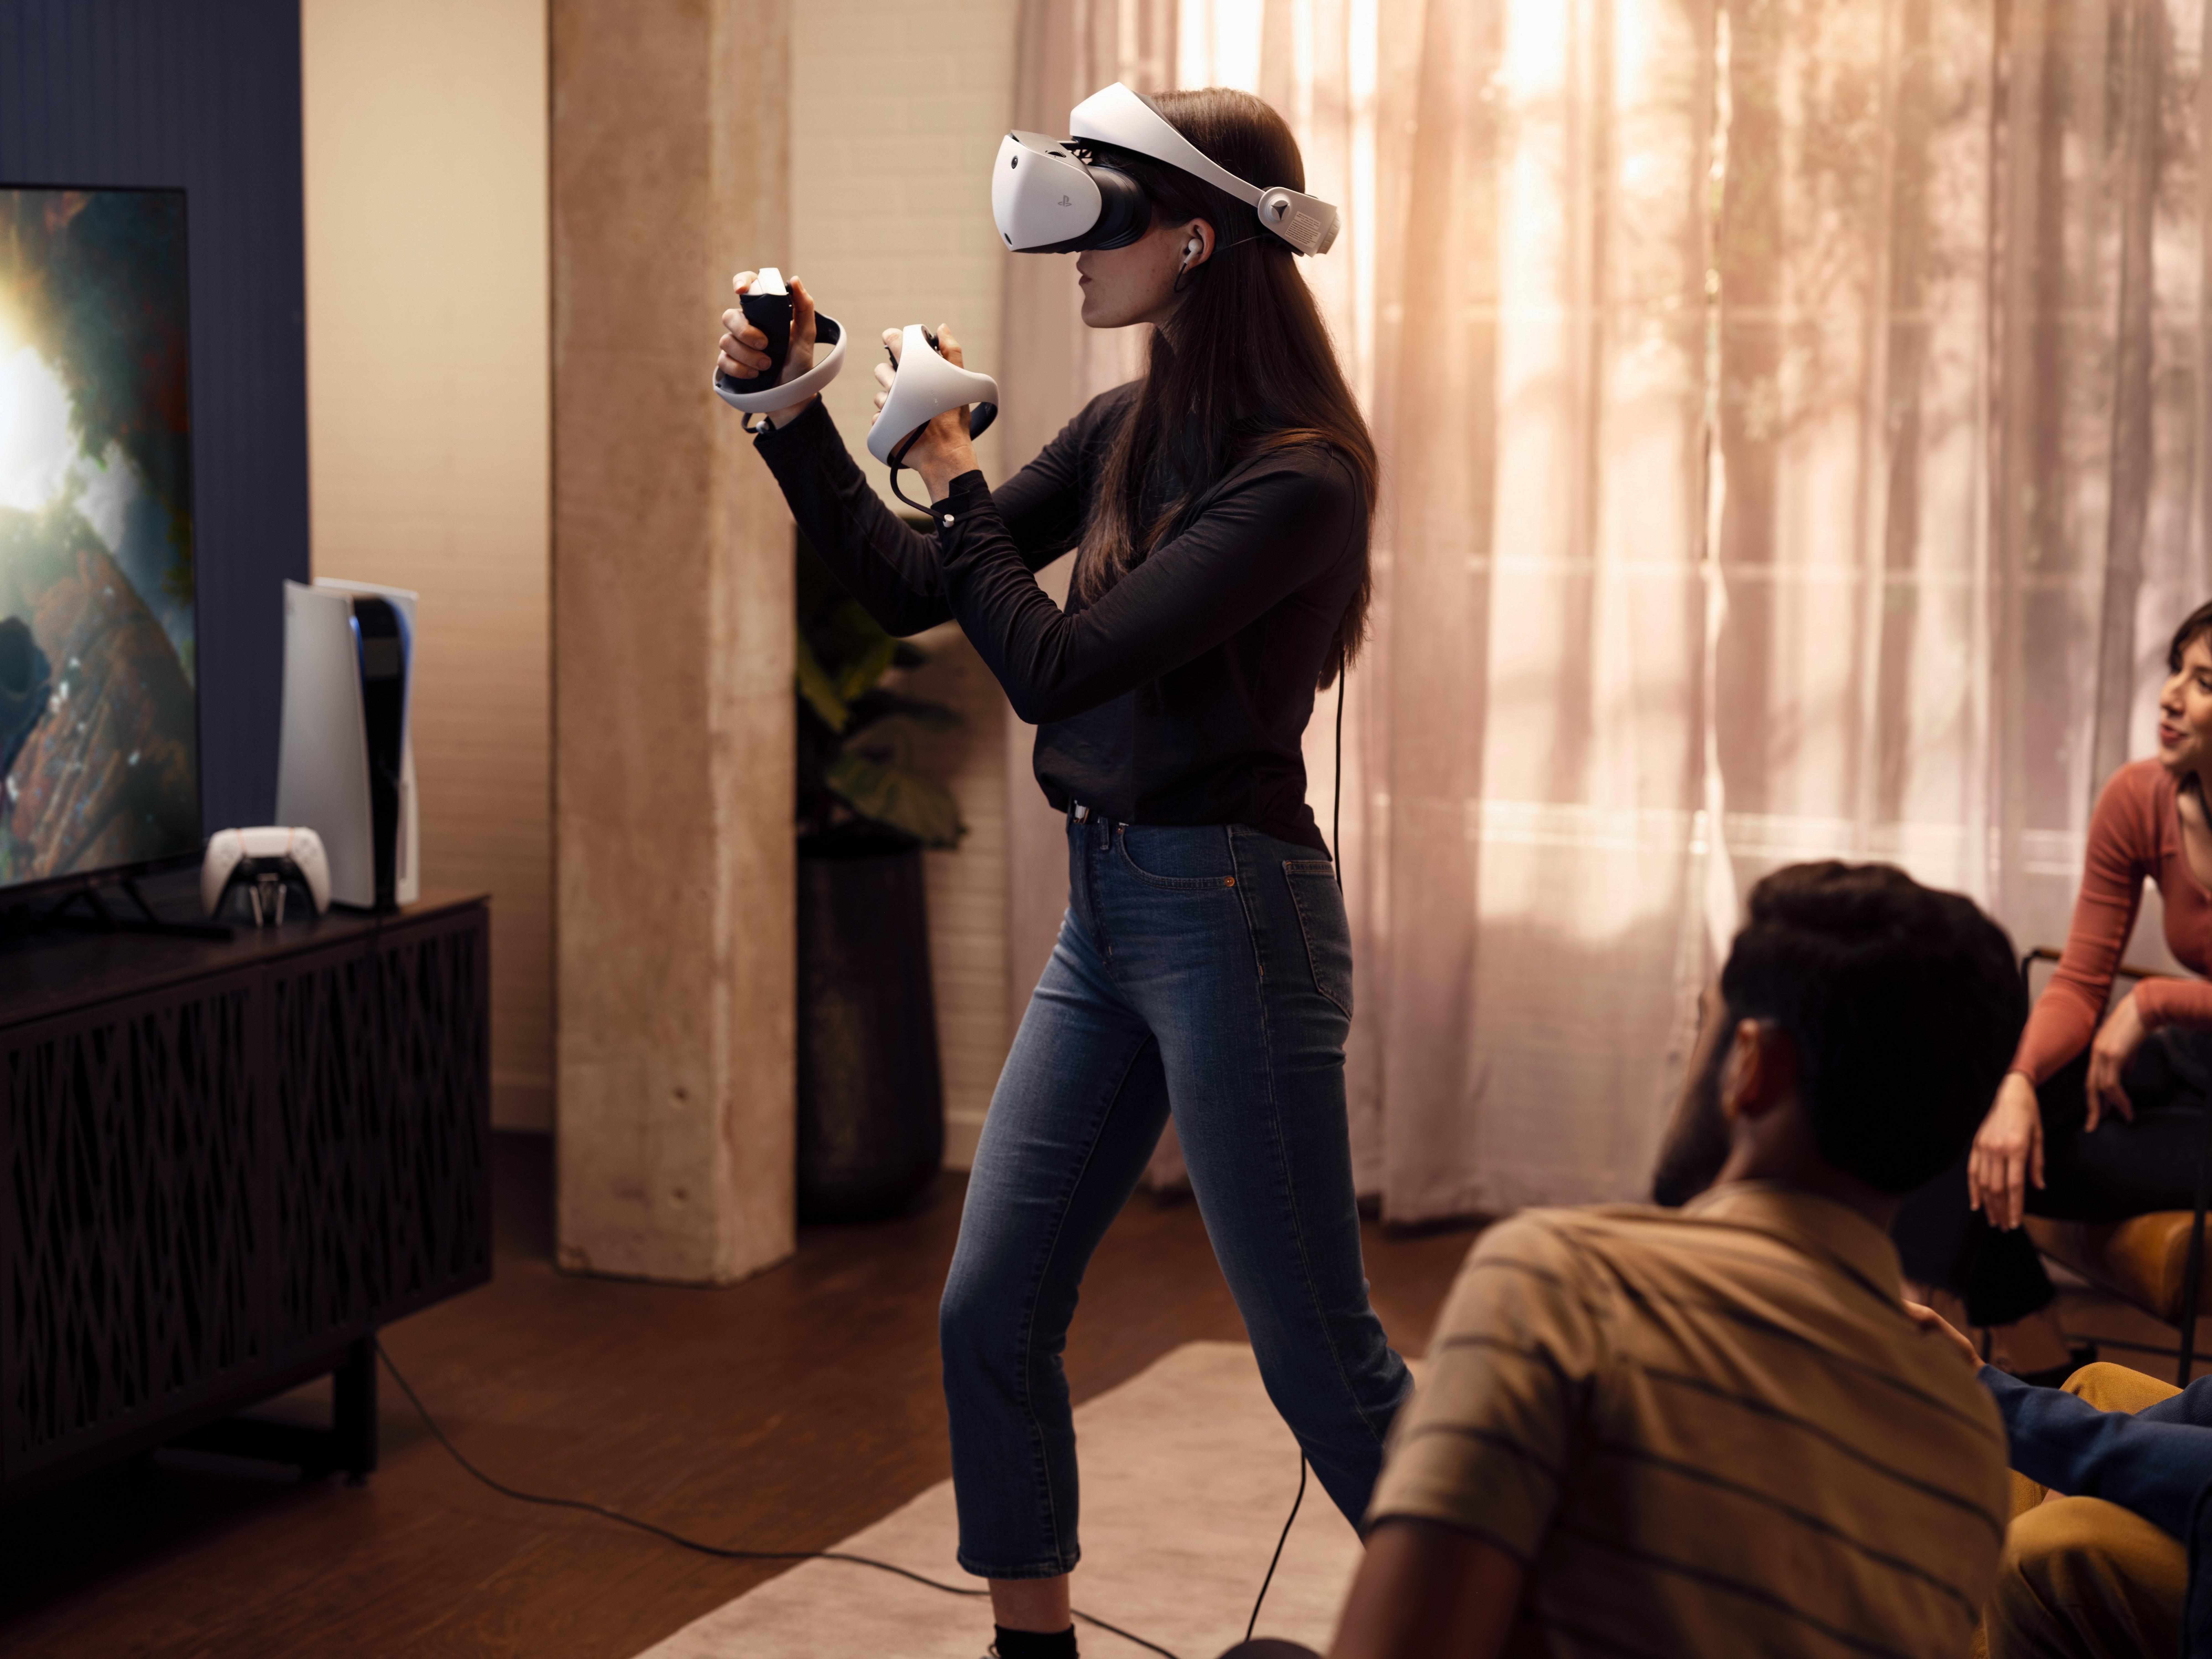 Sony PlayStation VR2 - Swappa